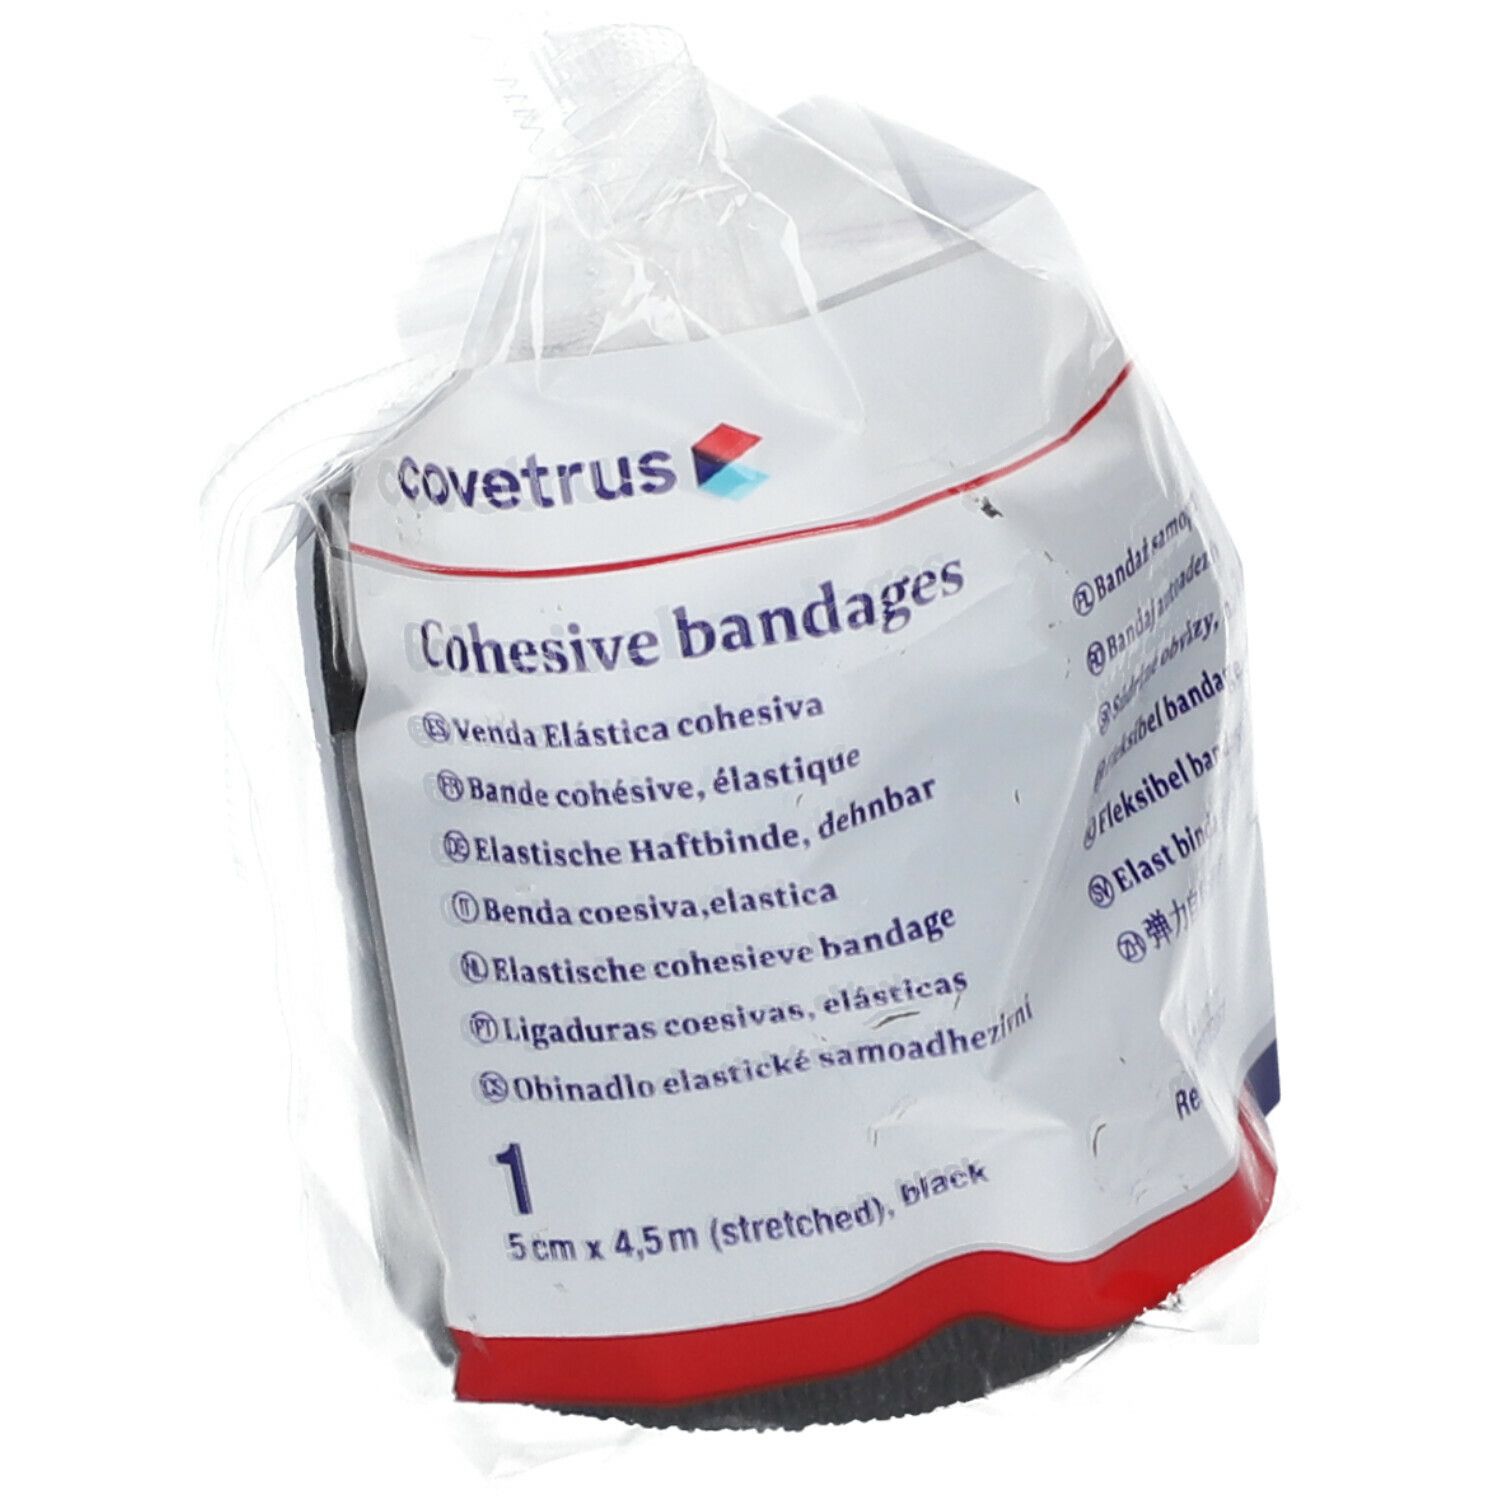 covetrus Cohesive bandages 5cm x 4,5m black